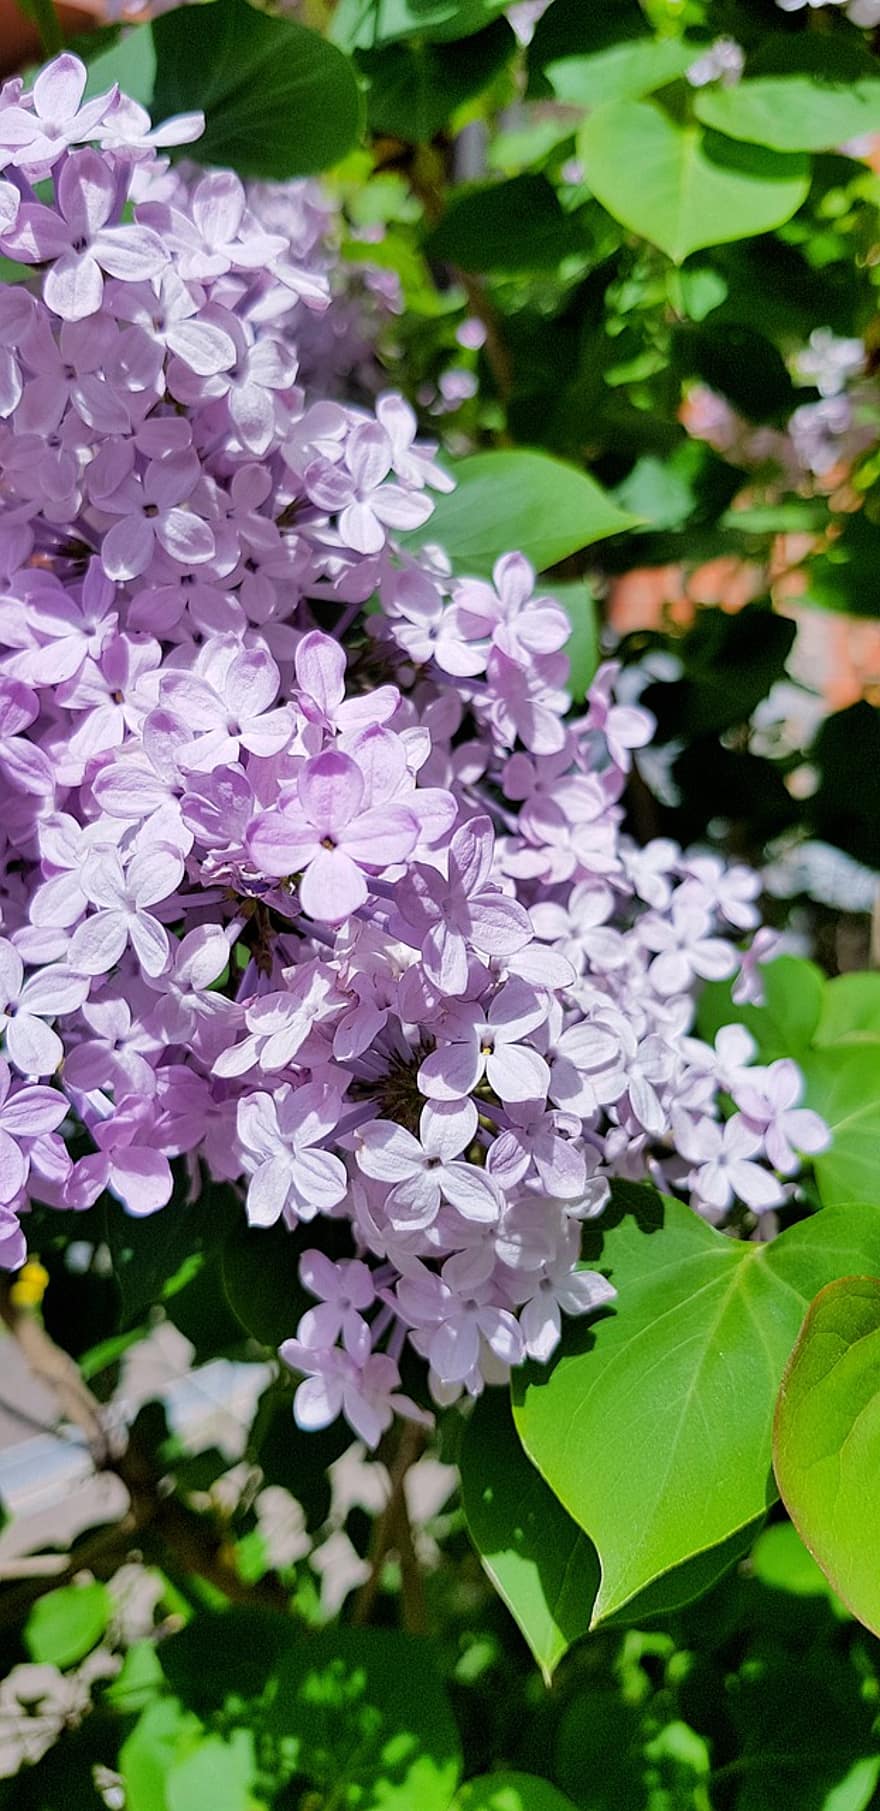 lilacs, Violet, flori, inflorescenţă, violet flori, petale, violete petale, inflori, floră, natură, plante